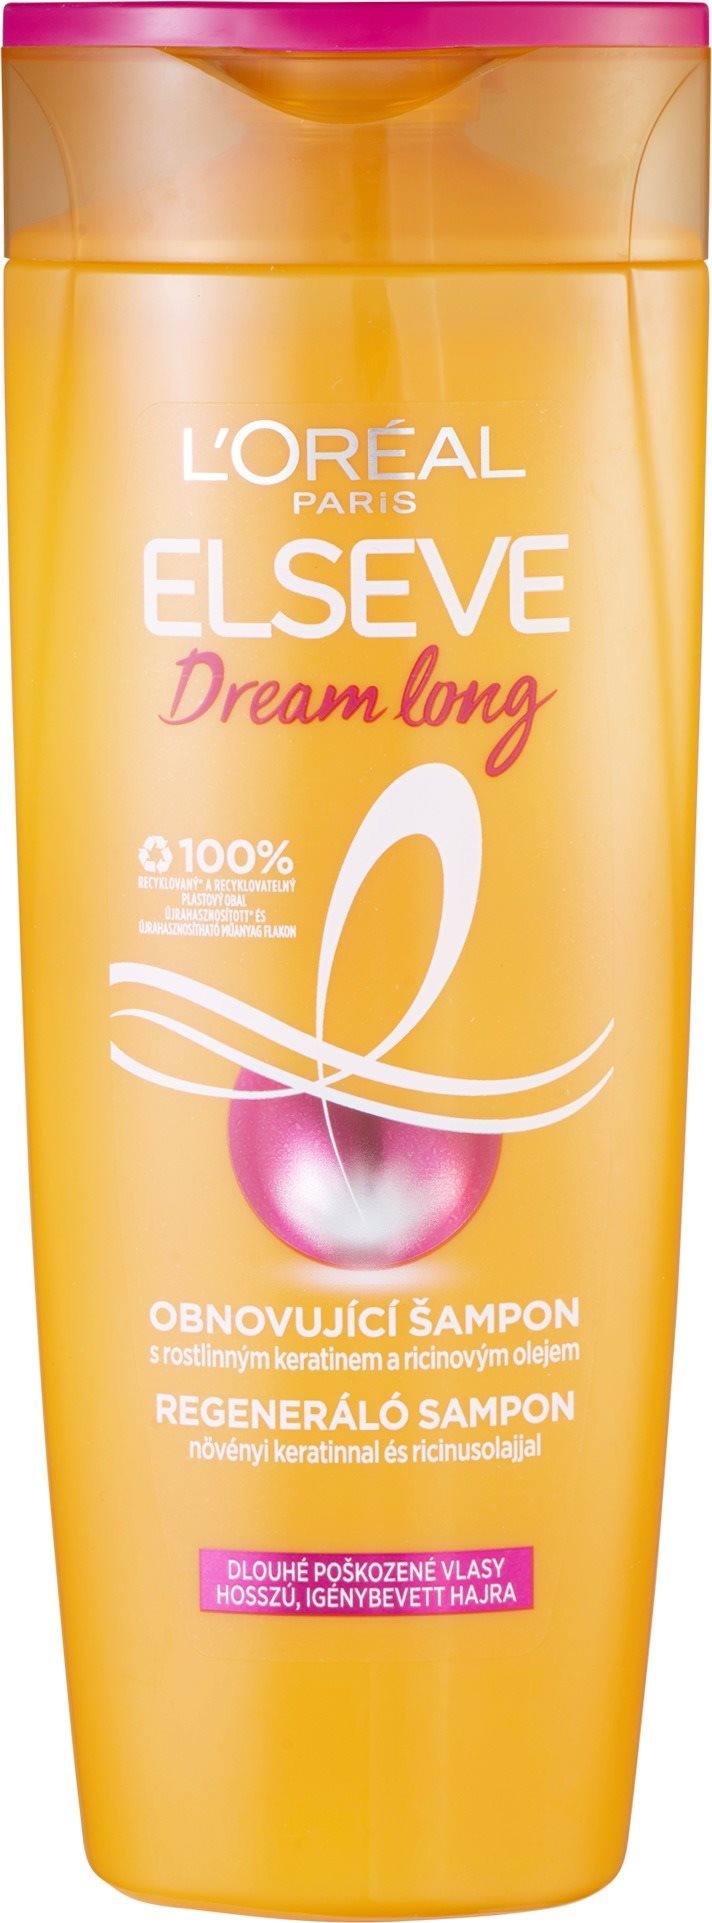 L'ORÉAL PARIS Elseve Dream Long Shampoo 400 ml